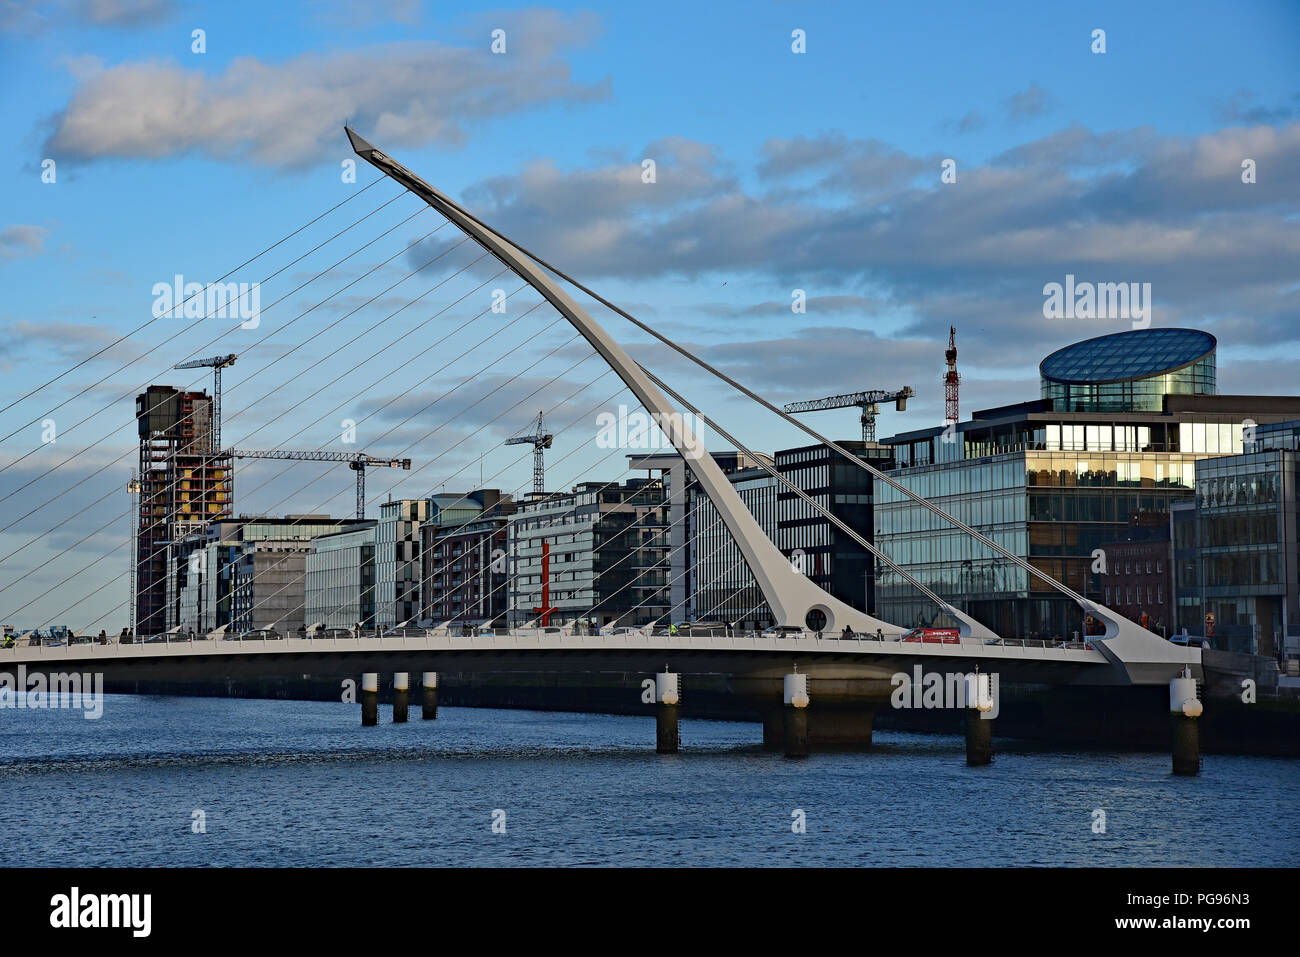 Samuel Beckett Bridge, situato nel cuore di Dublin Docklands, un prezioso collegamento tra il nord e il sud quays, Irlanda. Foto Stock